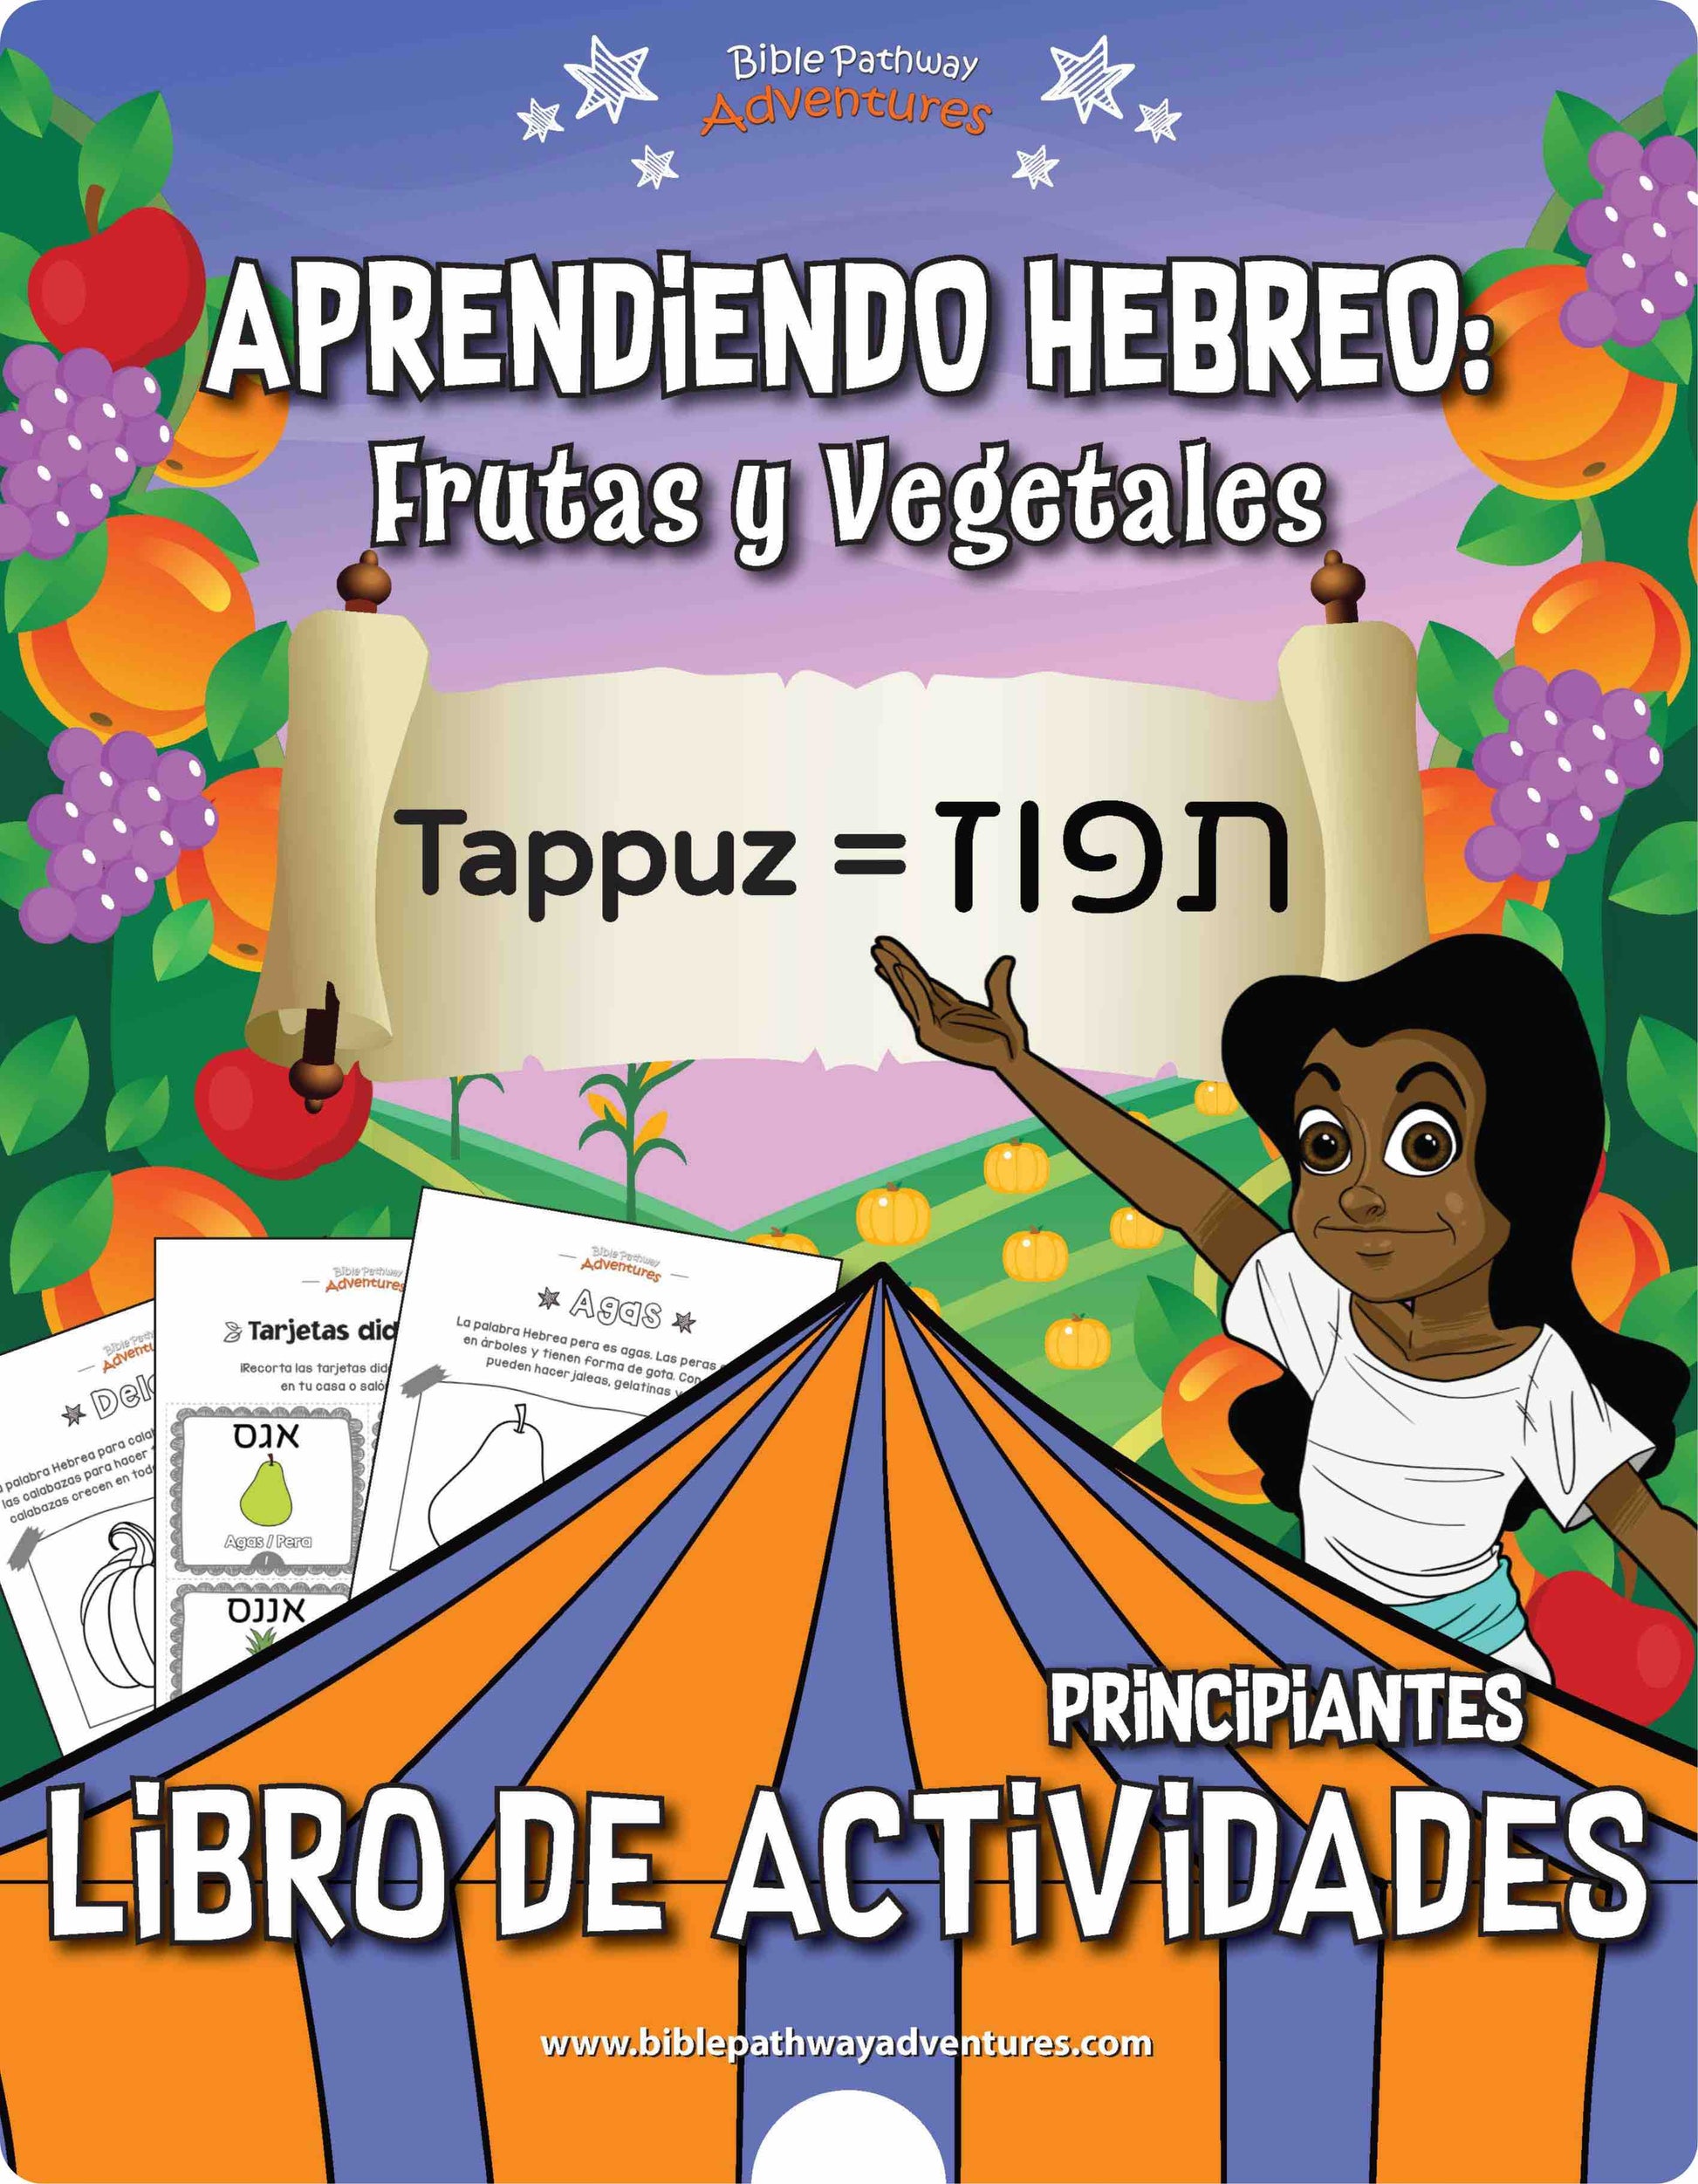 Libro de Actividades Aprendiendo Hebreo: Frutas y Vegetales book cover